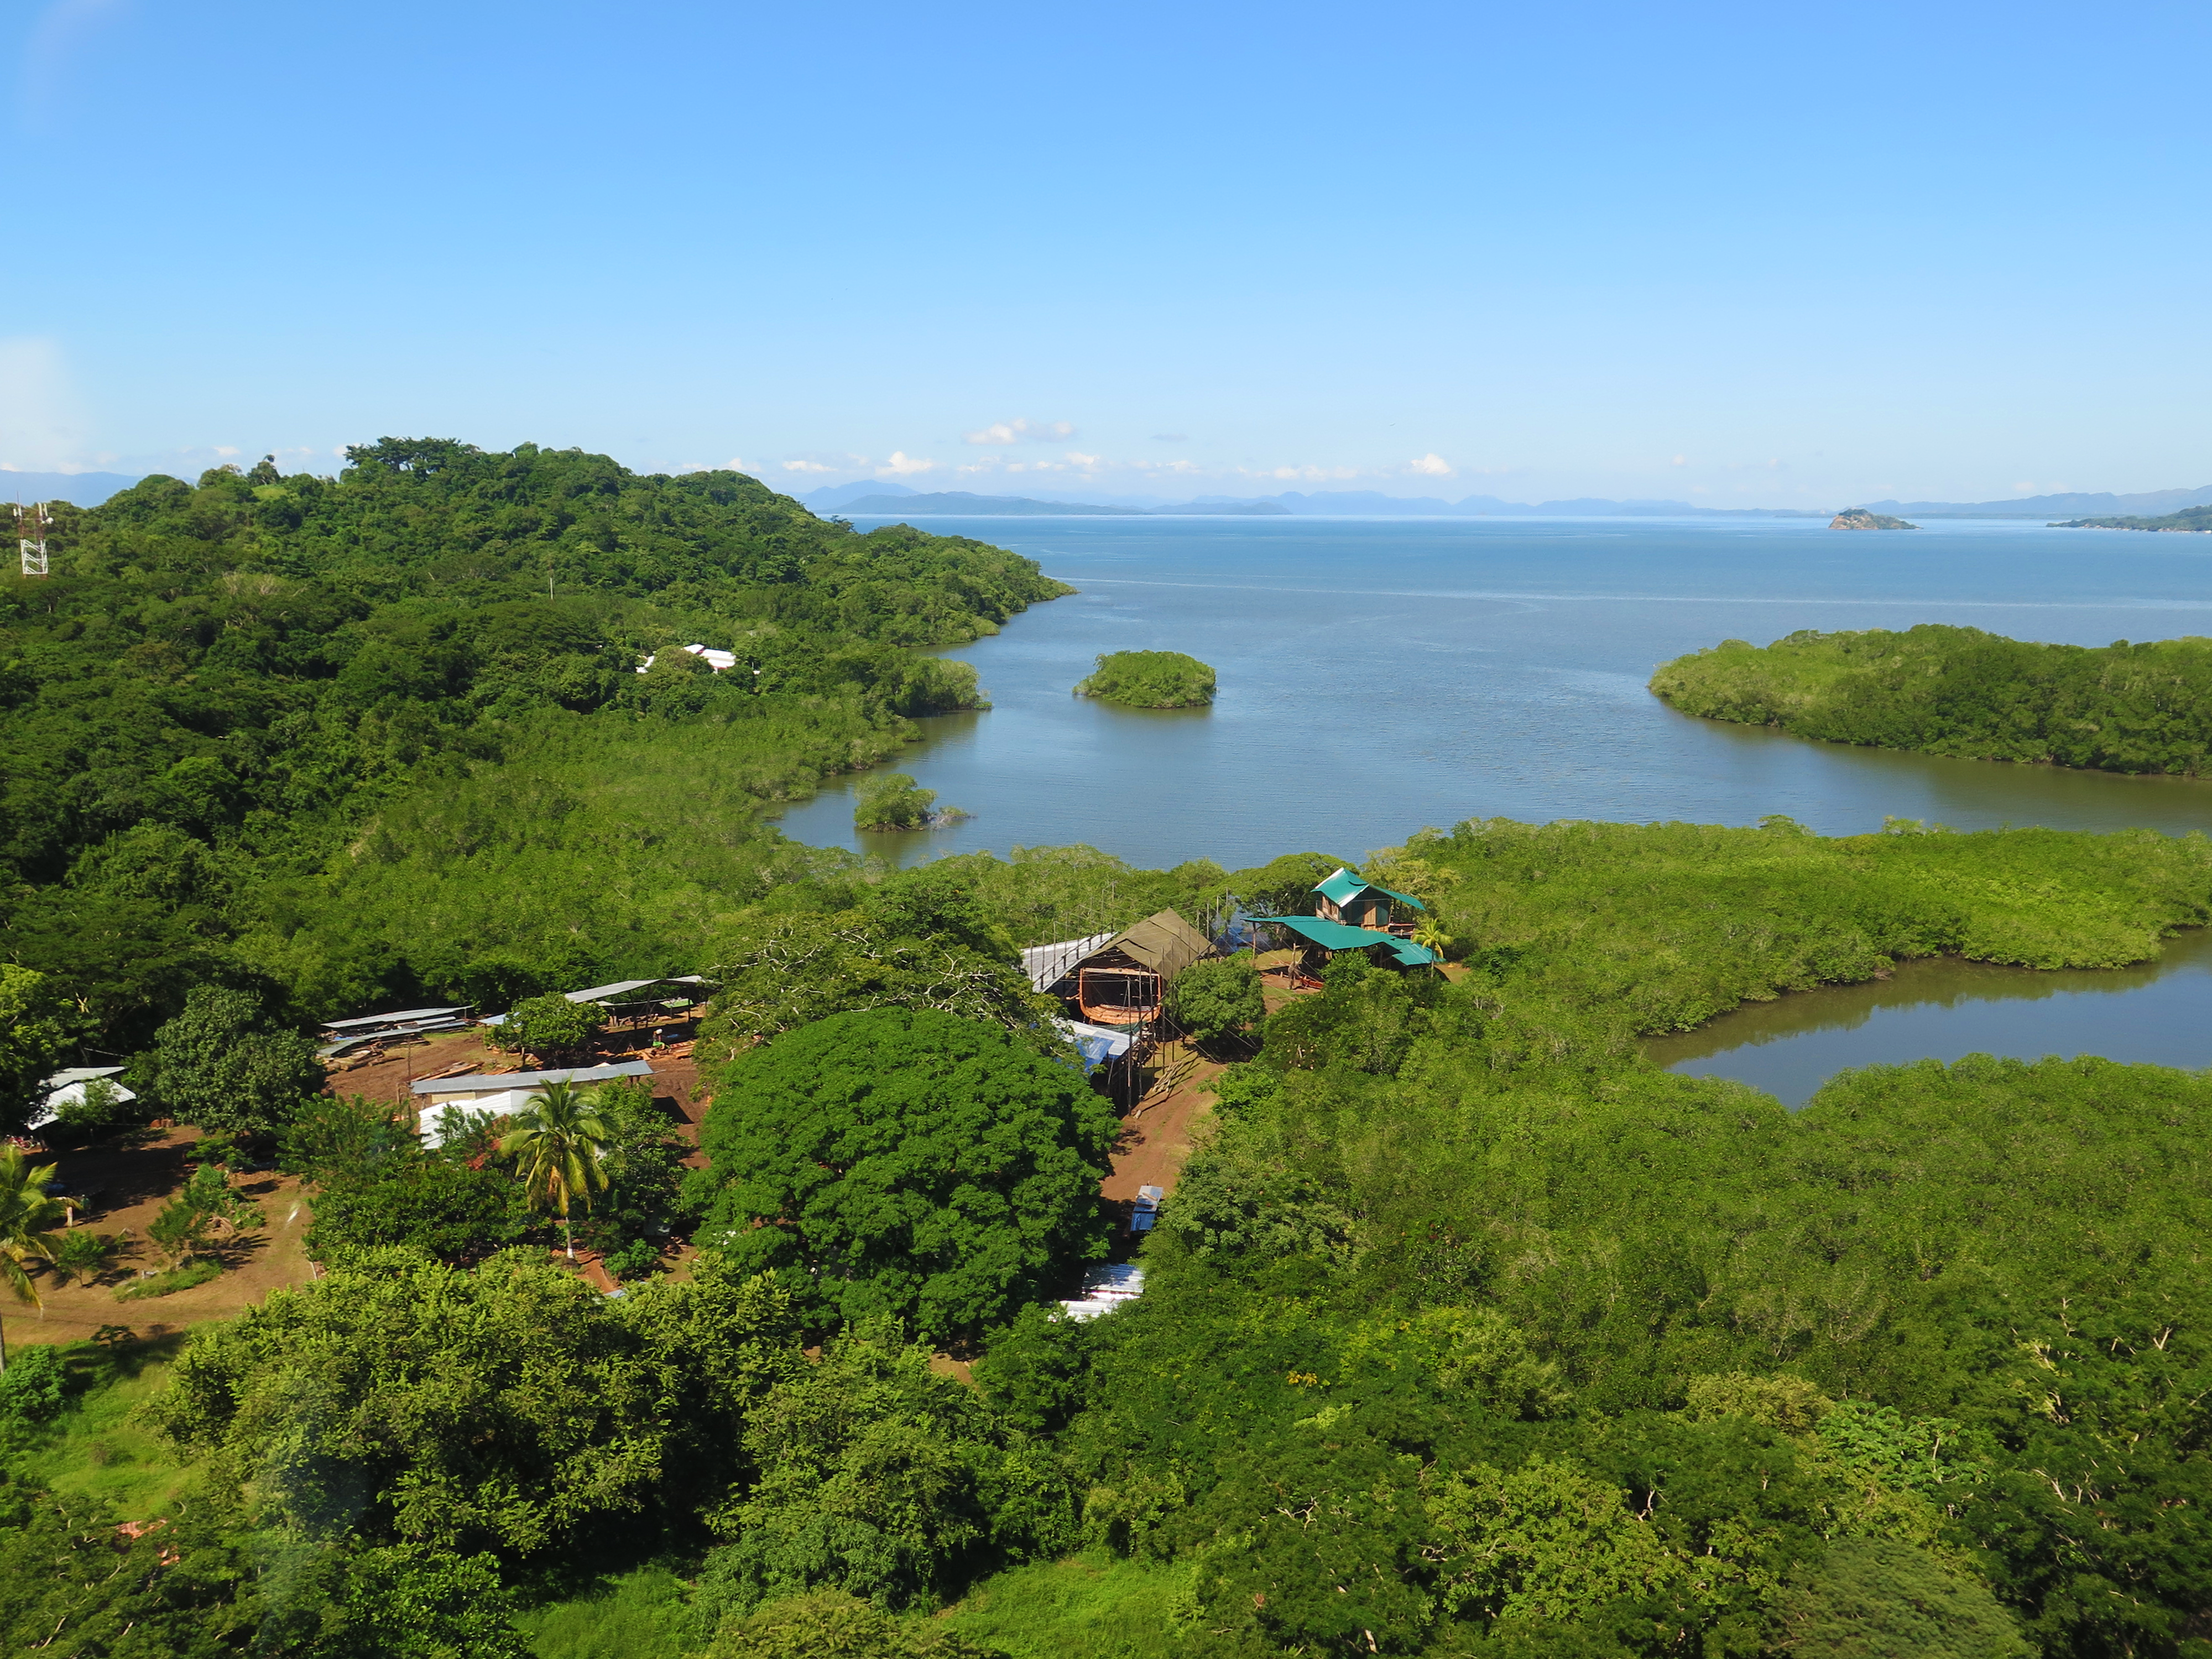 The schooner Ceiba is being built in the Costa Rican jungle